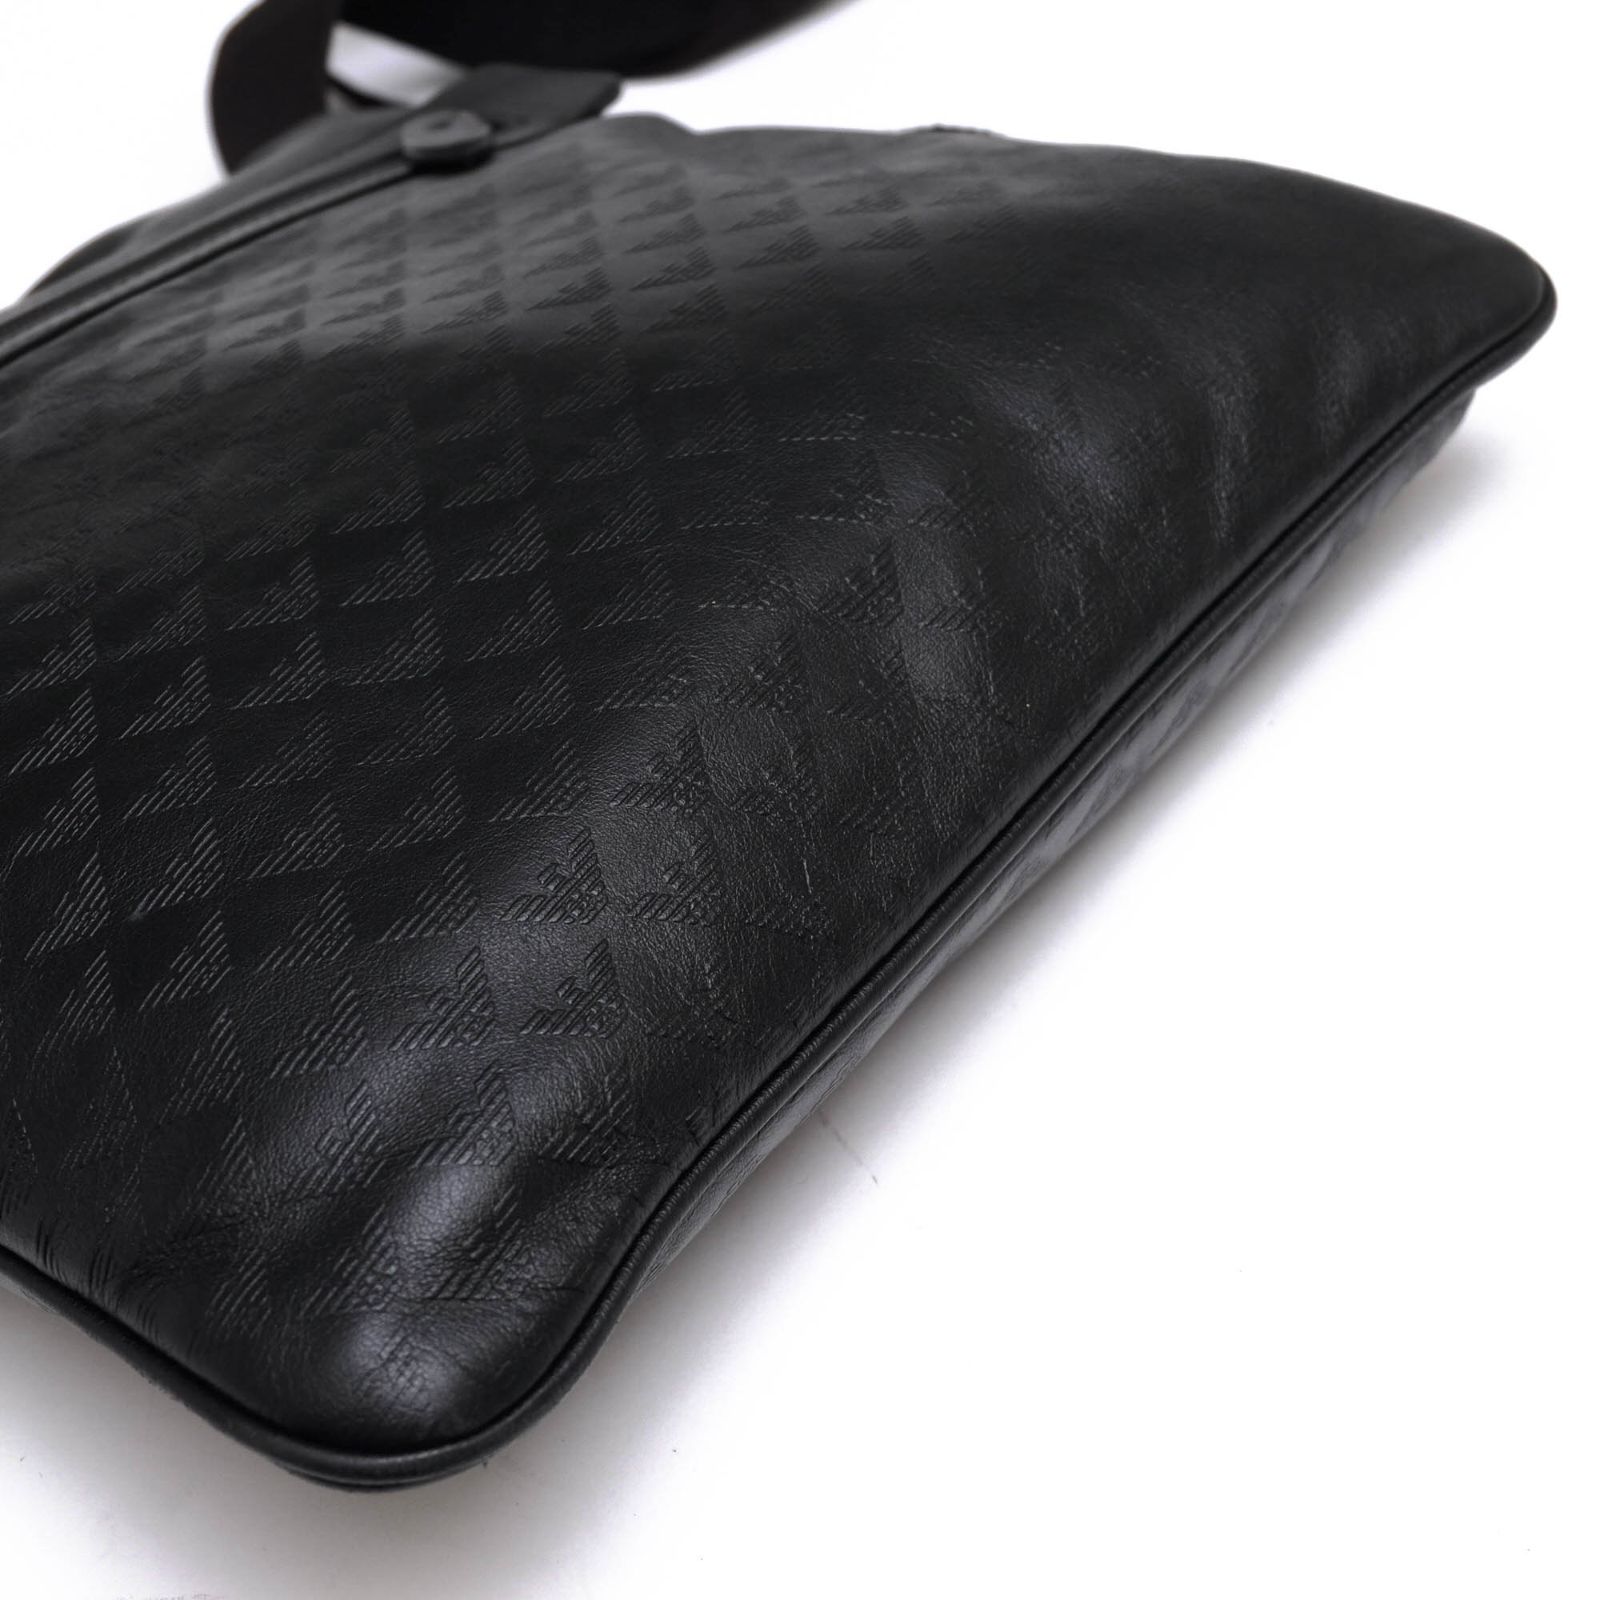 アルマーニ／EMPORIO ARMANI バッグ ショルダーバッグ 鞄 メンズ 男性 男性用レザー 革 本革 ブラック 黒  YEM819 YC043 イーグルロゴ ボディバッグ